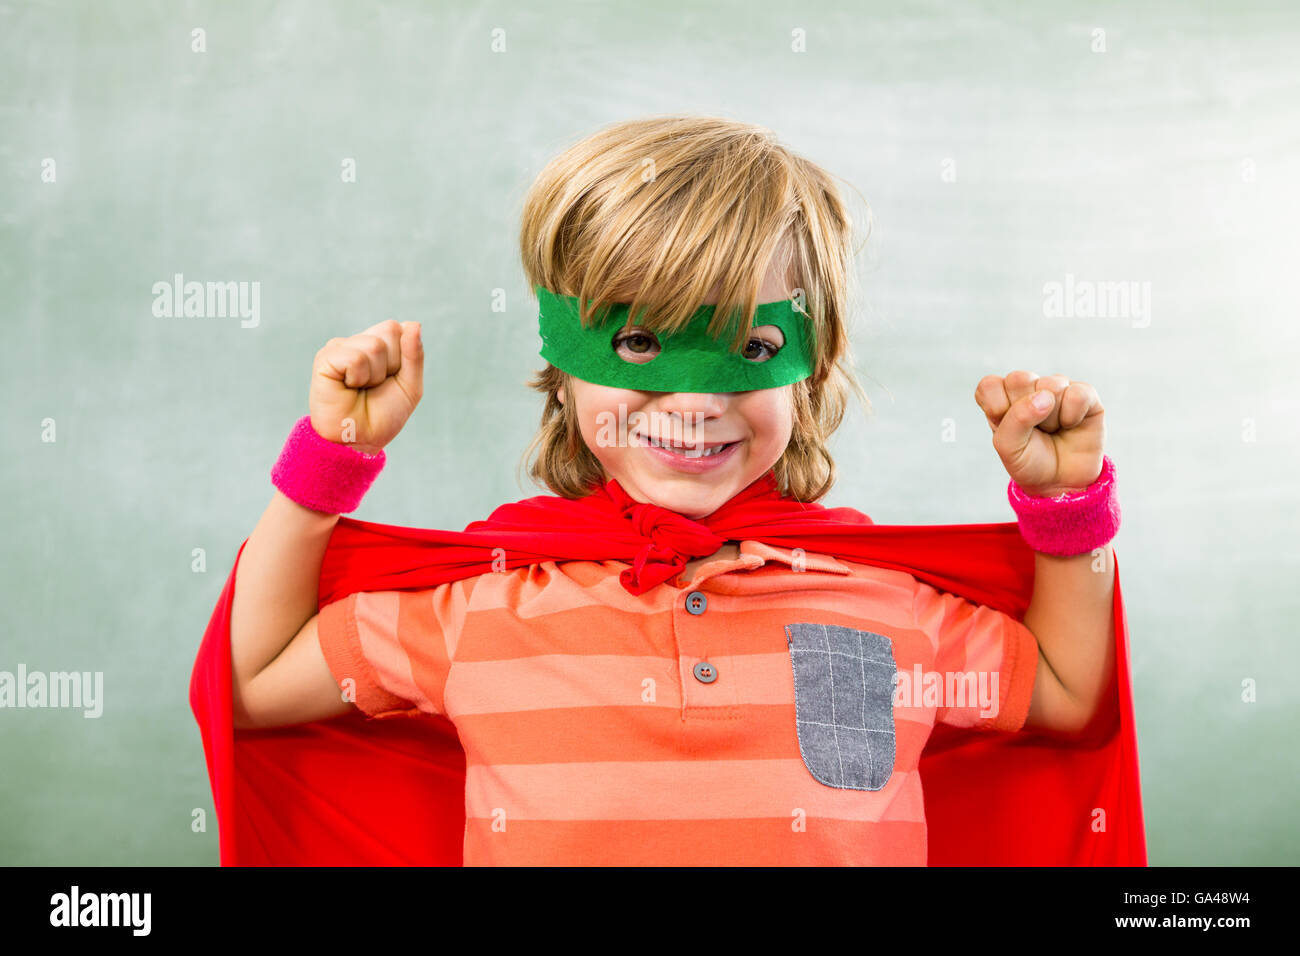 Heureux garçon habillé en super héros en classe Banque D'Images